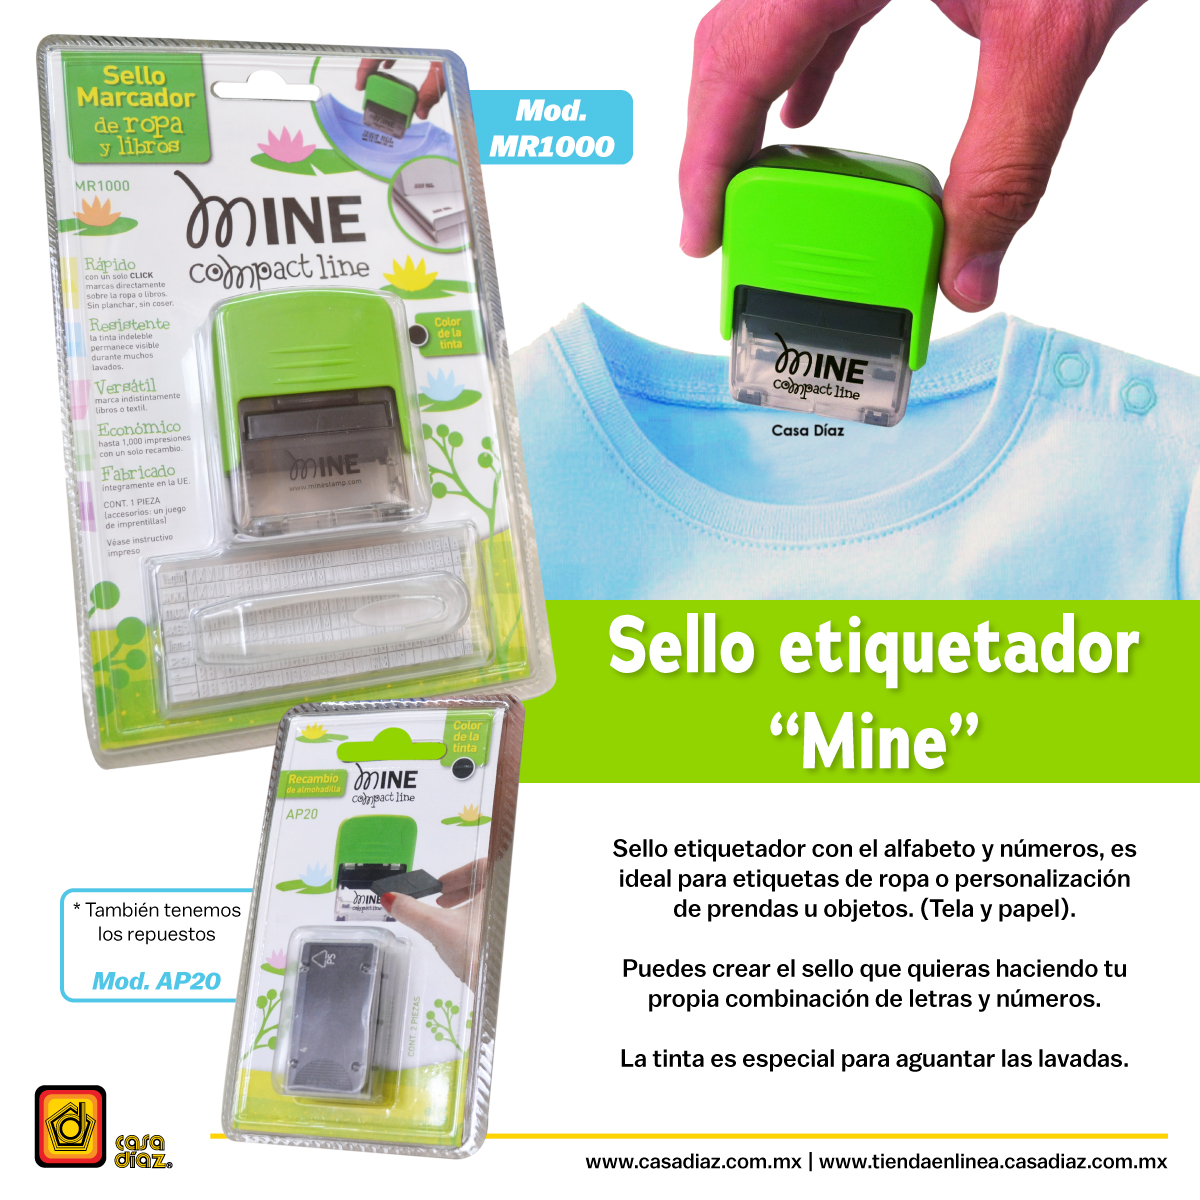 Casa Díaz MX on Twitter: "El sello etiquetador "Mine" viene con el alfabeto y lo que lo hace ideal para etiquetas de ropa o de prendas u objetos (tela y